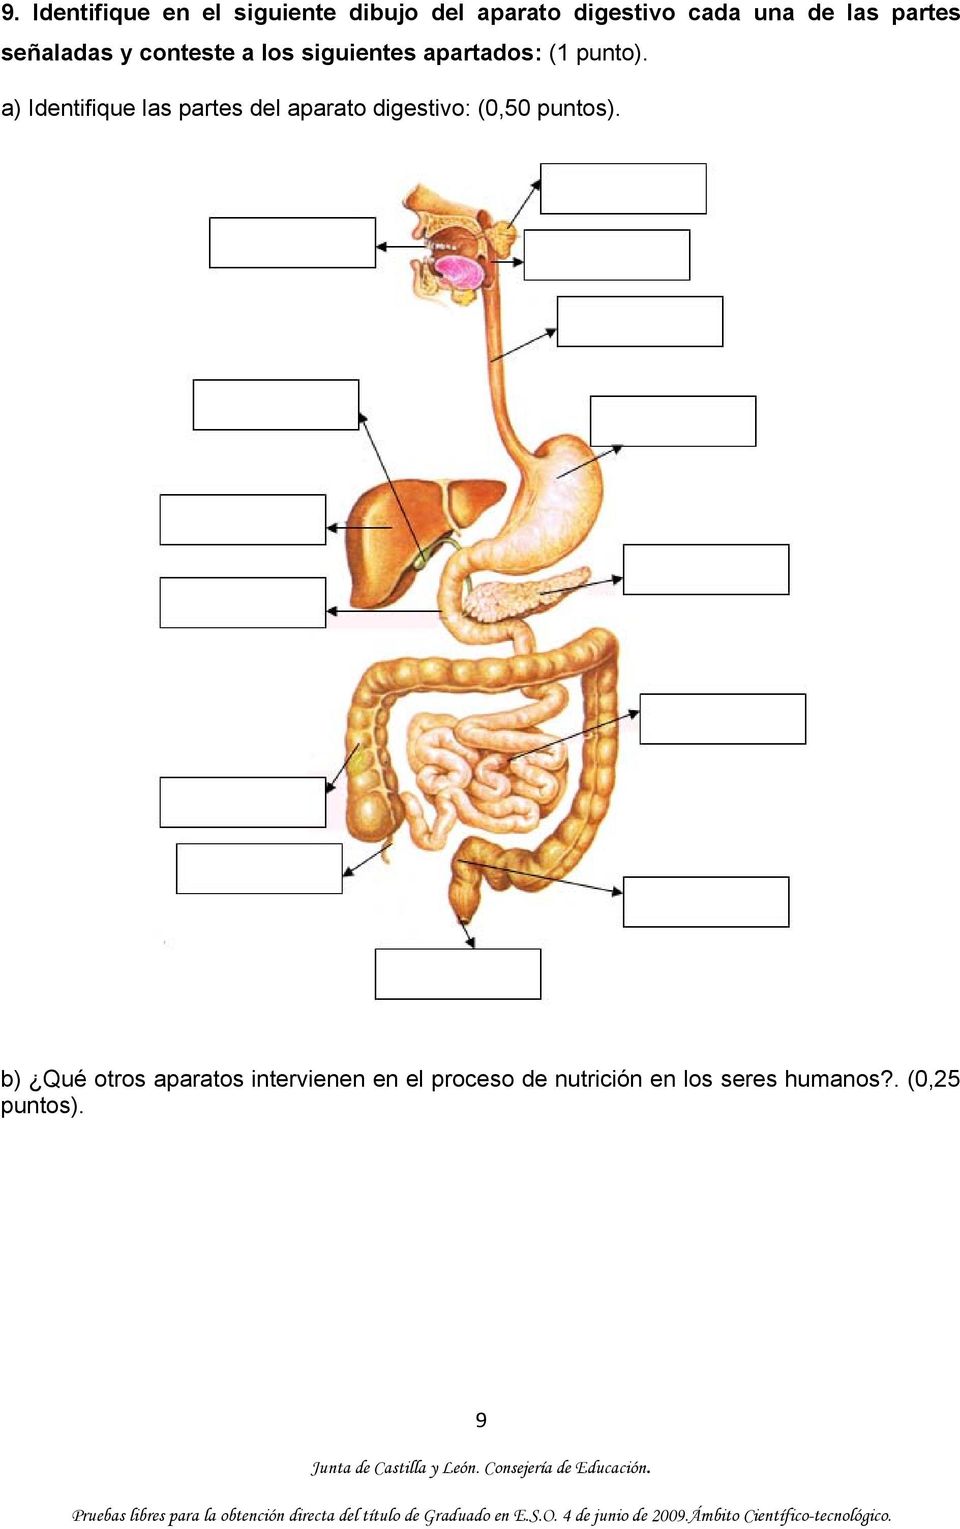 a) Identifique las partes del aparato digestivo: (0,50 puntos).